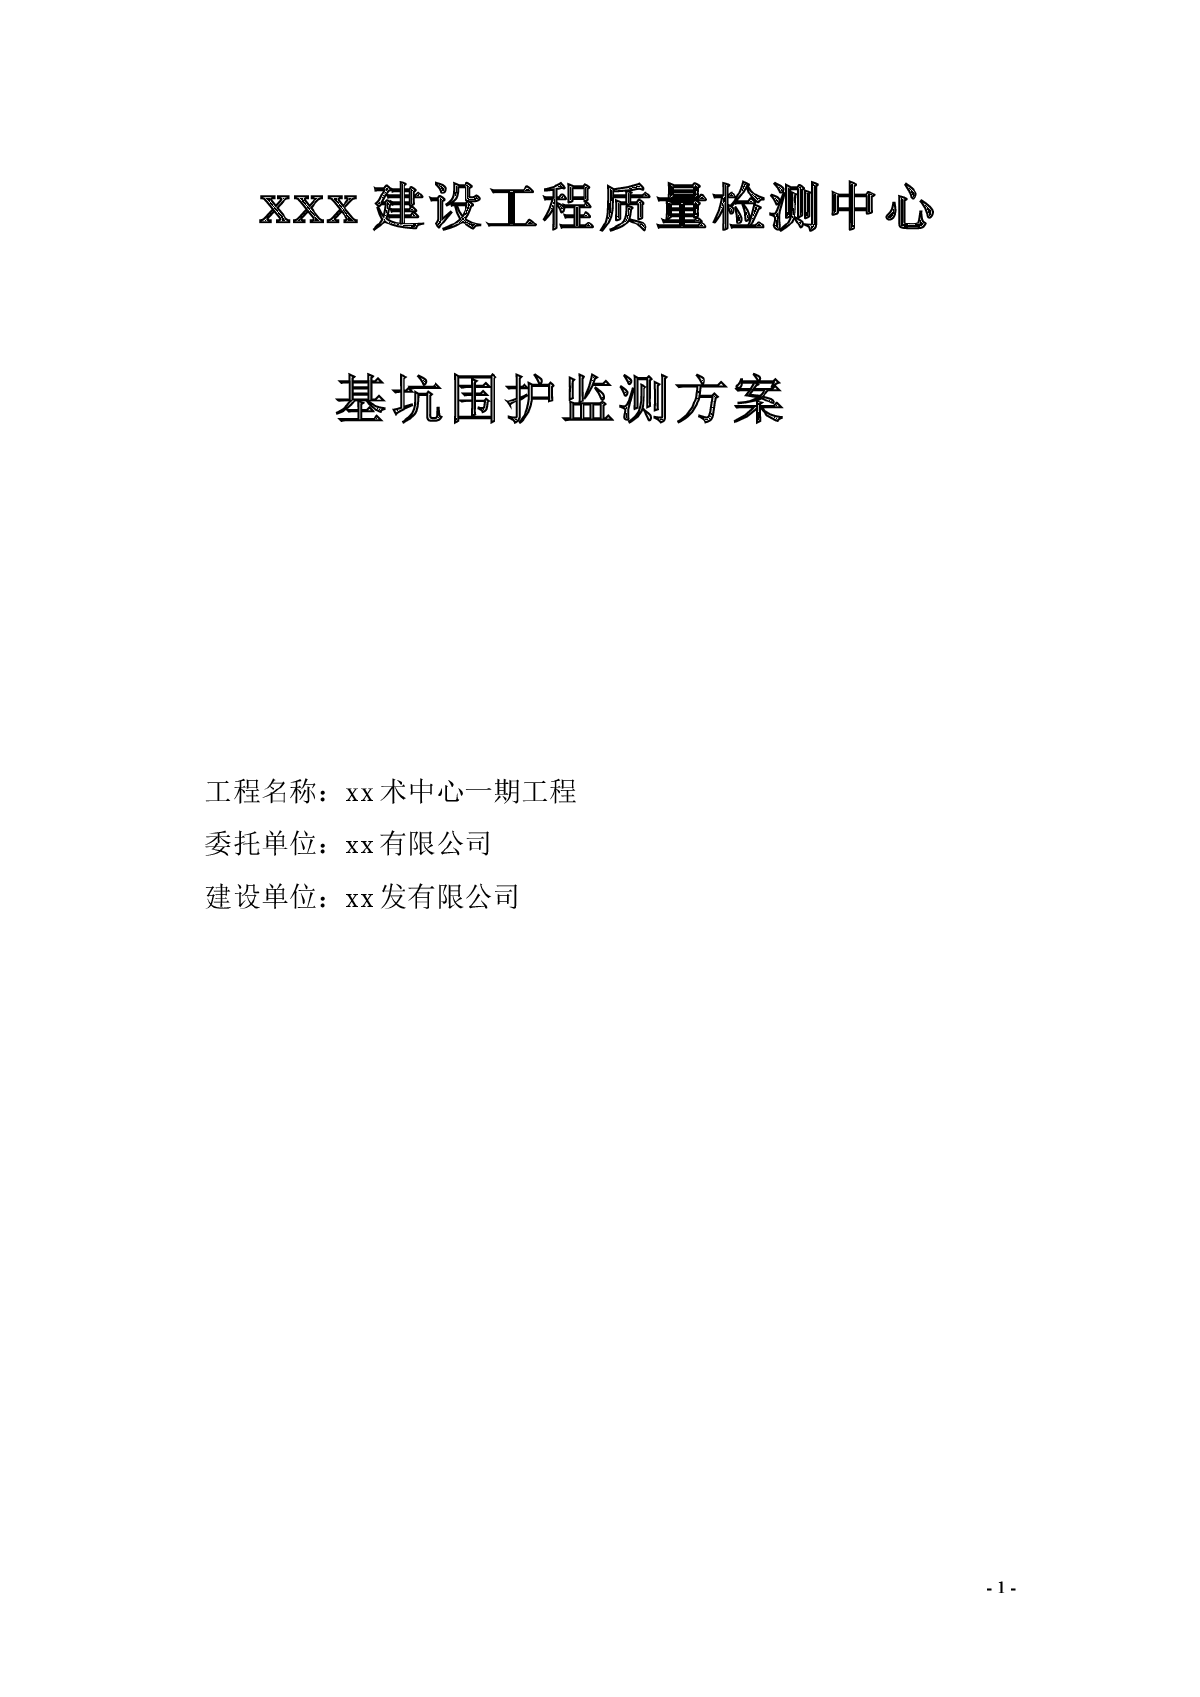 【江苏】深基坑施工监测方案